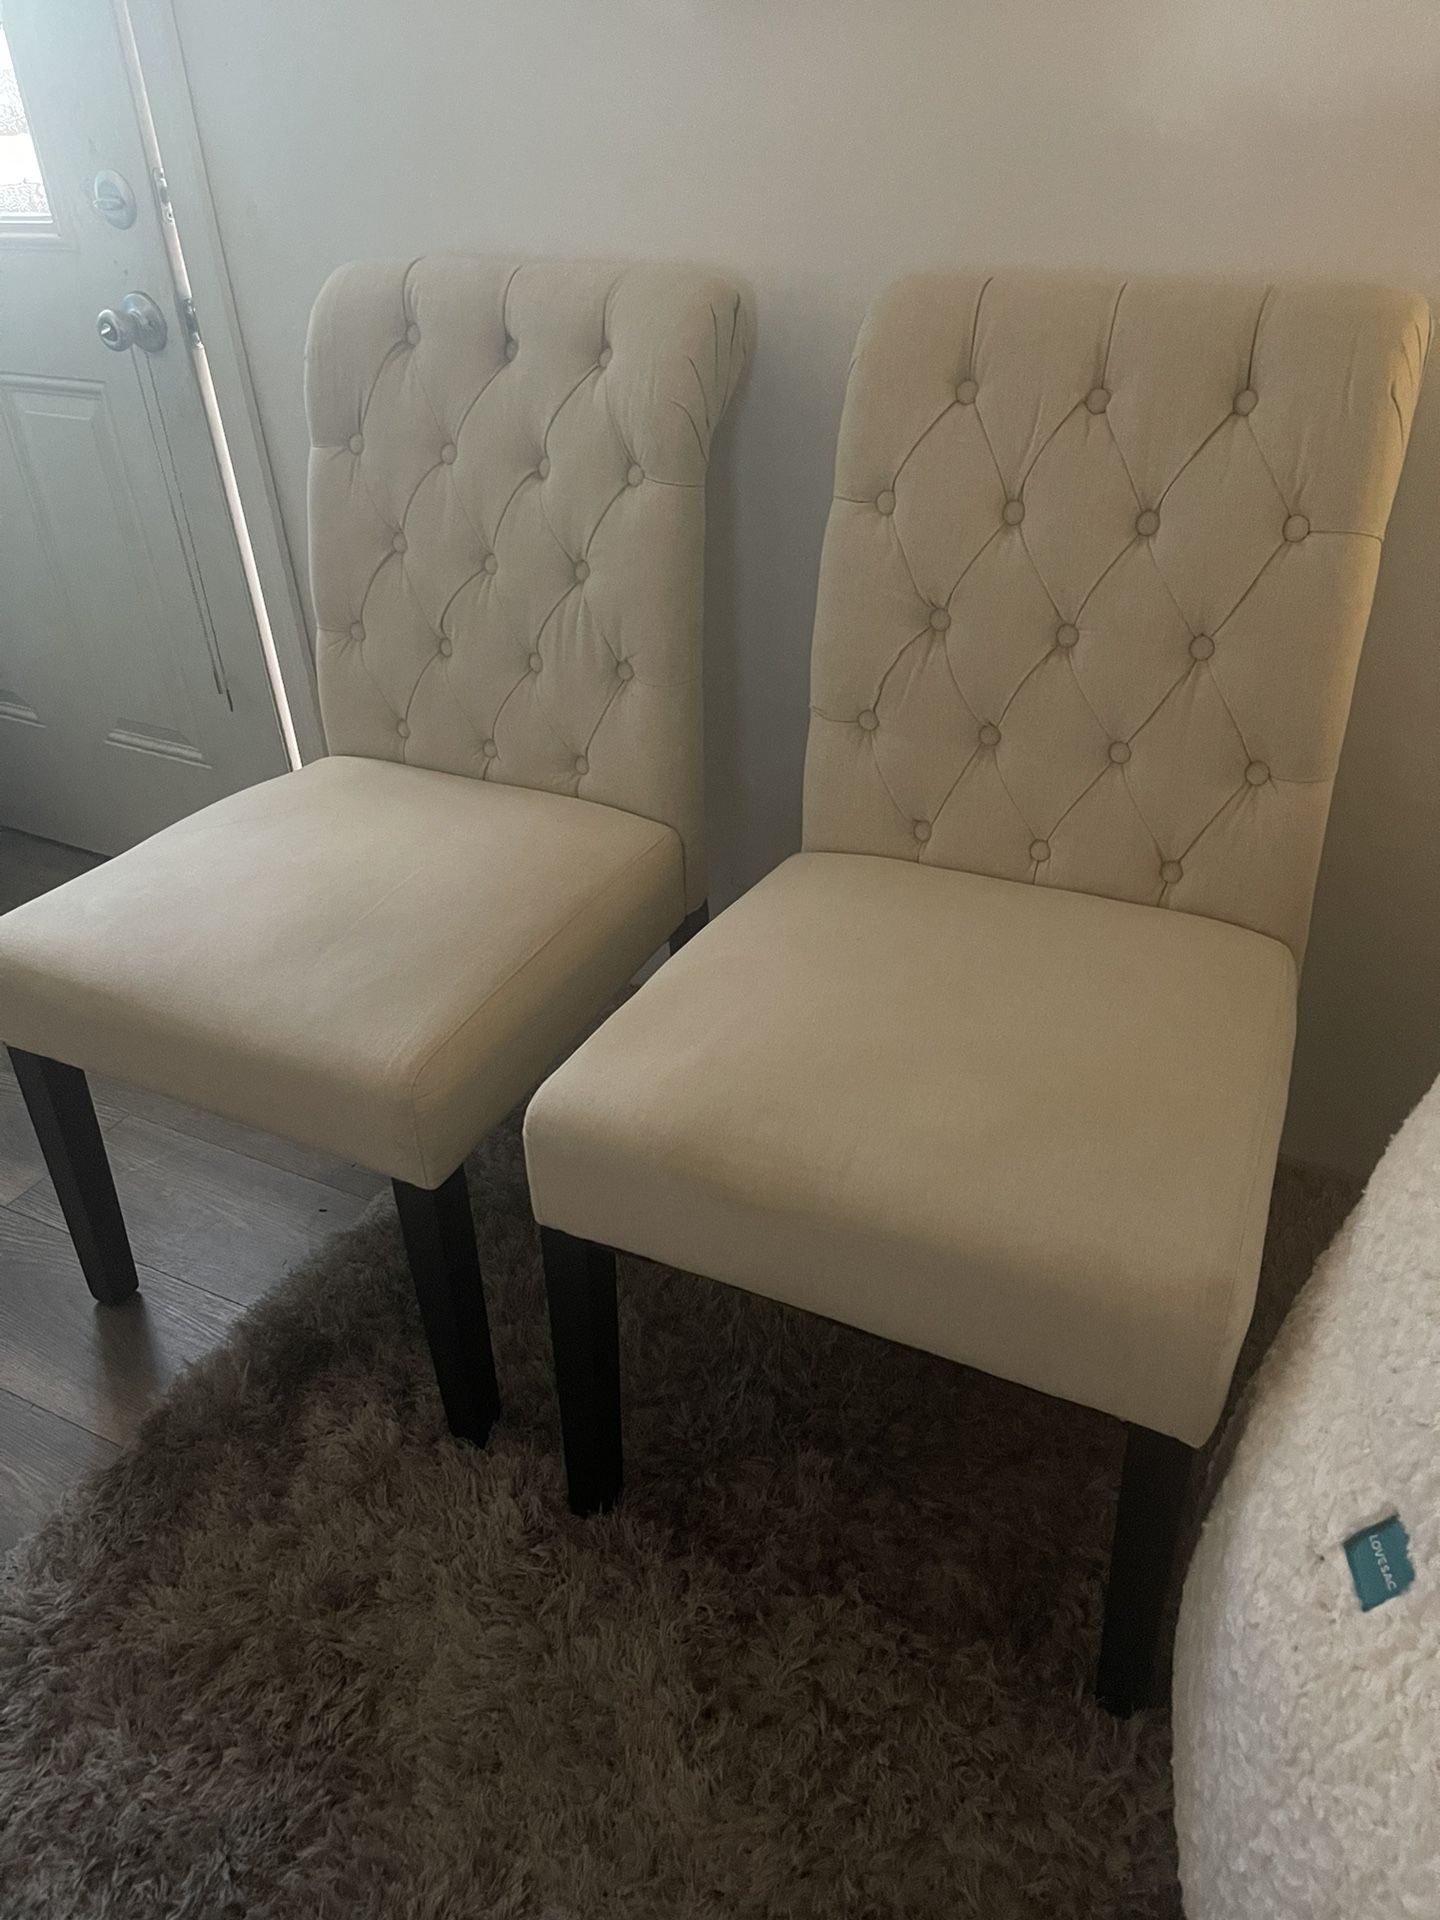 2 Cushion Chairs 